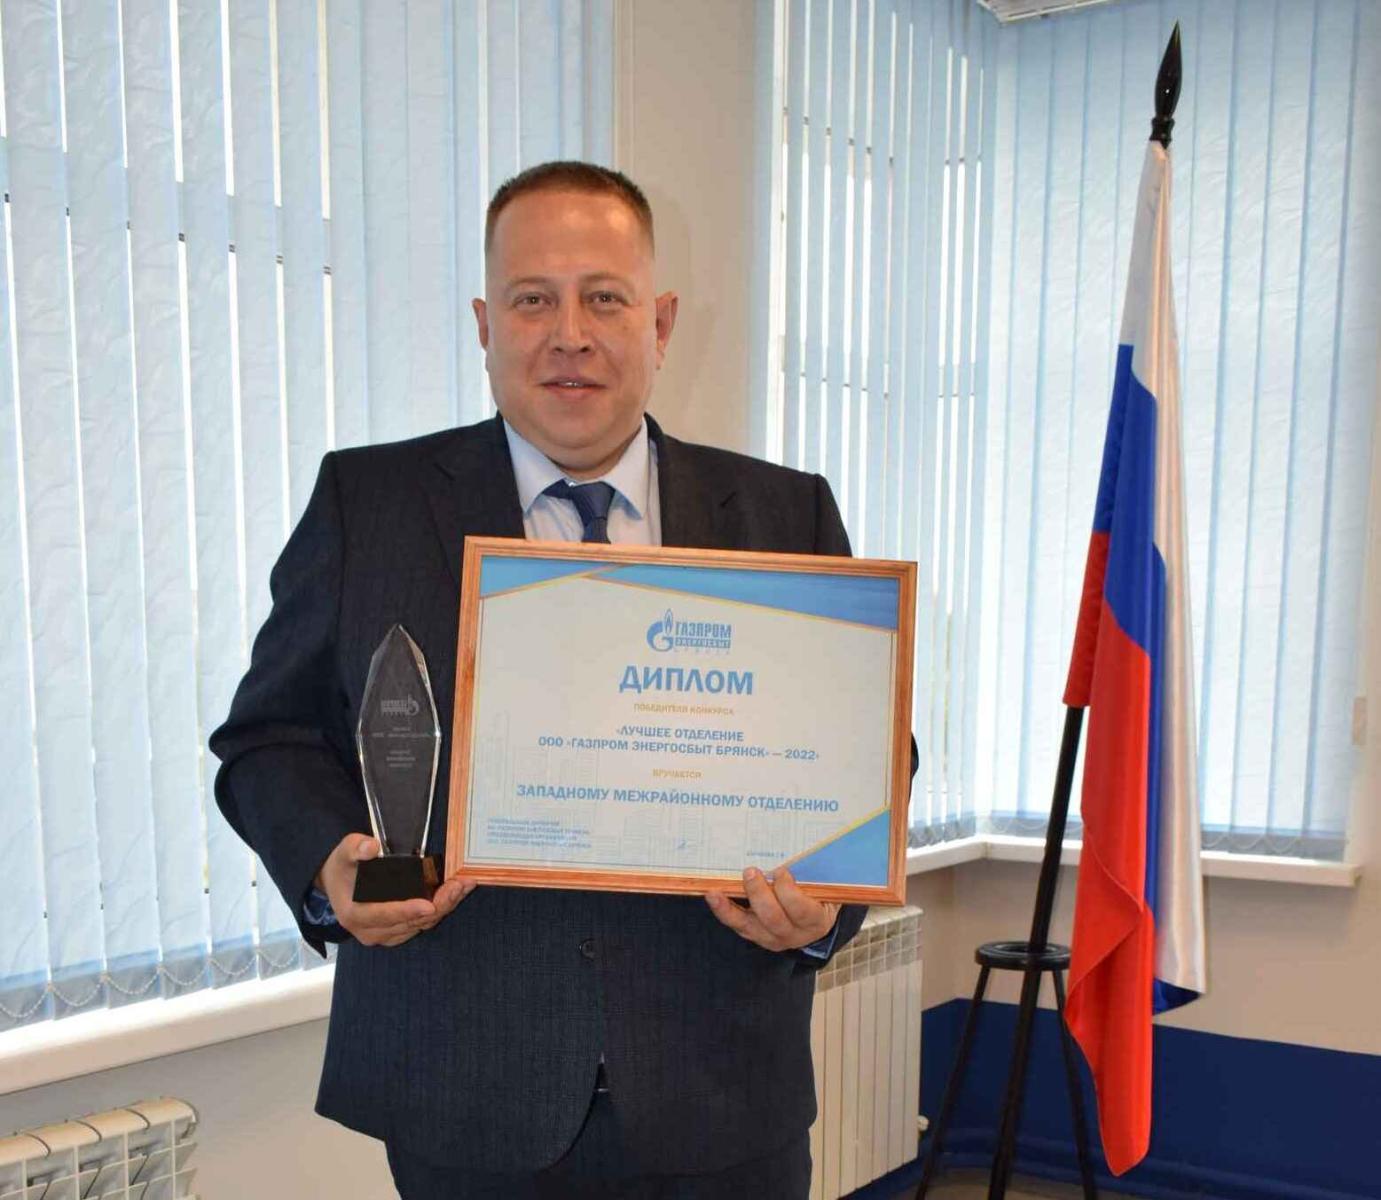 В филиале «Брянскэнергосбыт» назвали победителя конкурса  «Лучшее отделение 2022 года»